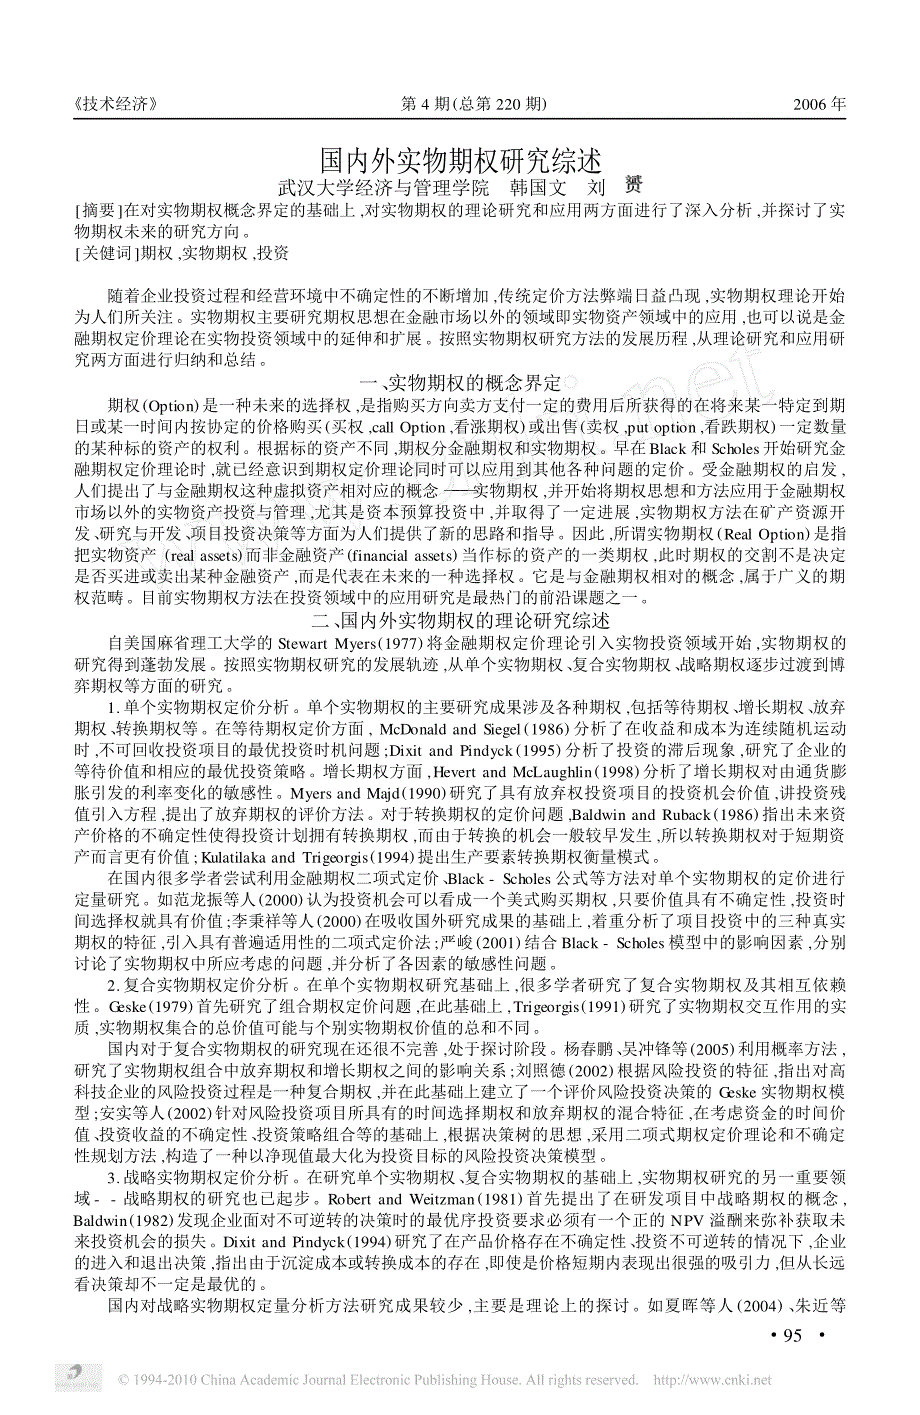 国内外实物期权研究综述_韩国文_第1页